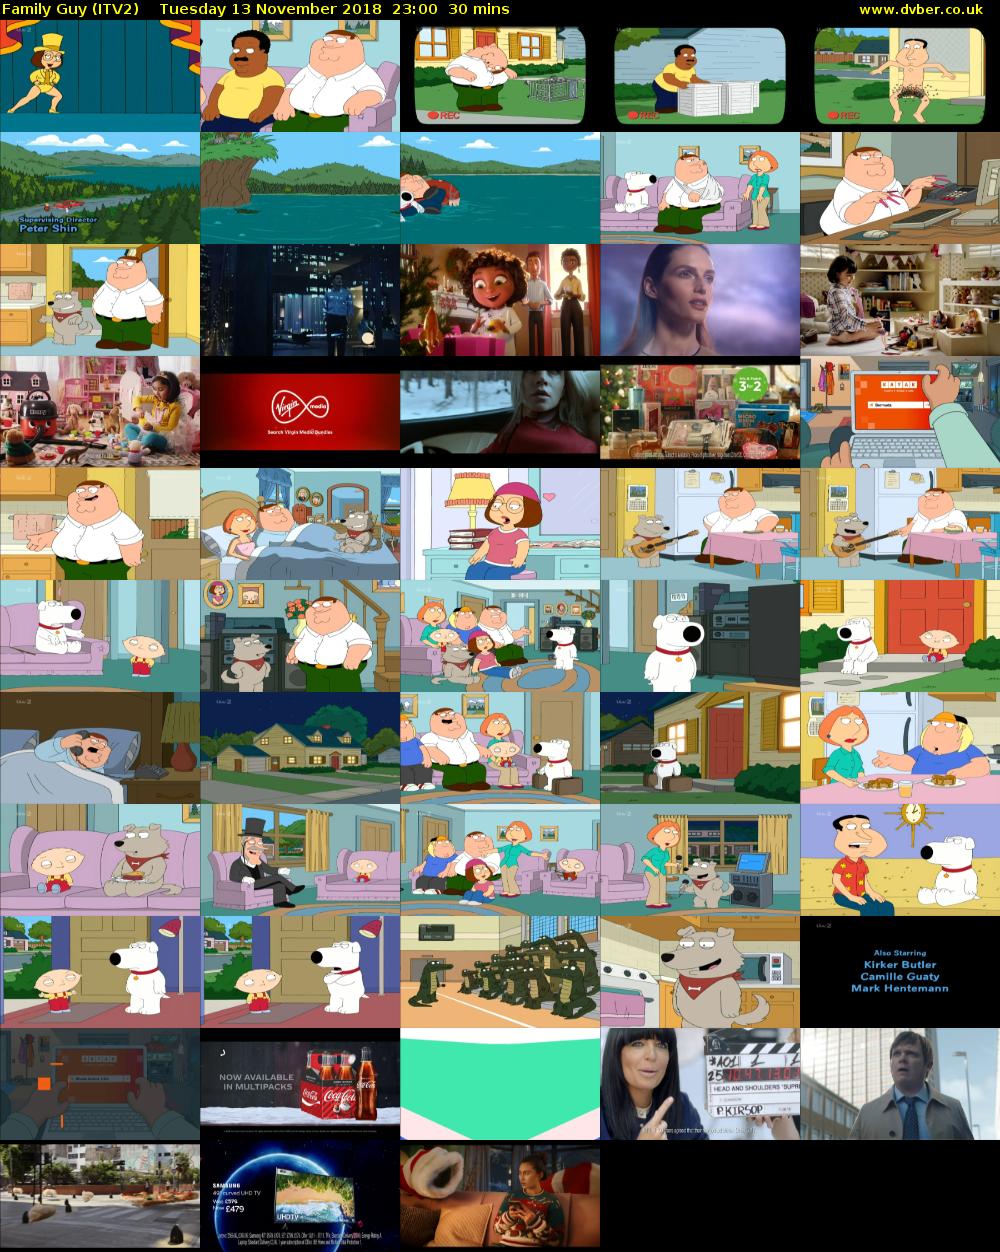 Family Guy (ITV2) Tuesday 13 November 2018 23:00 - 23:30